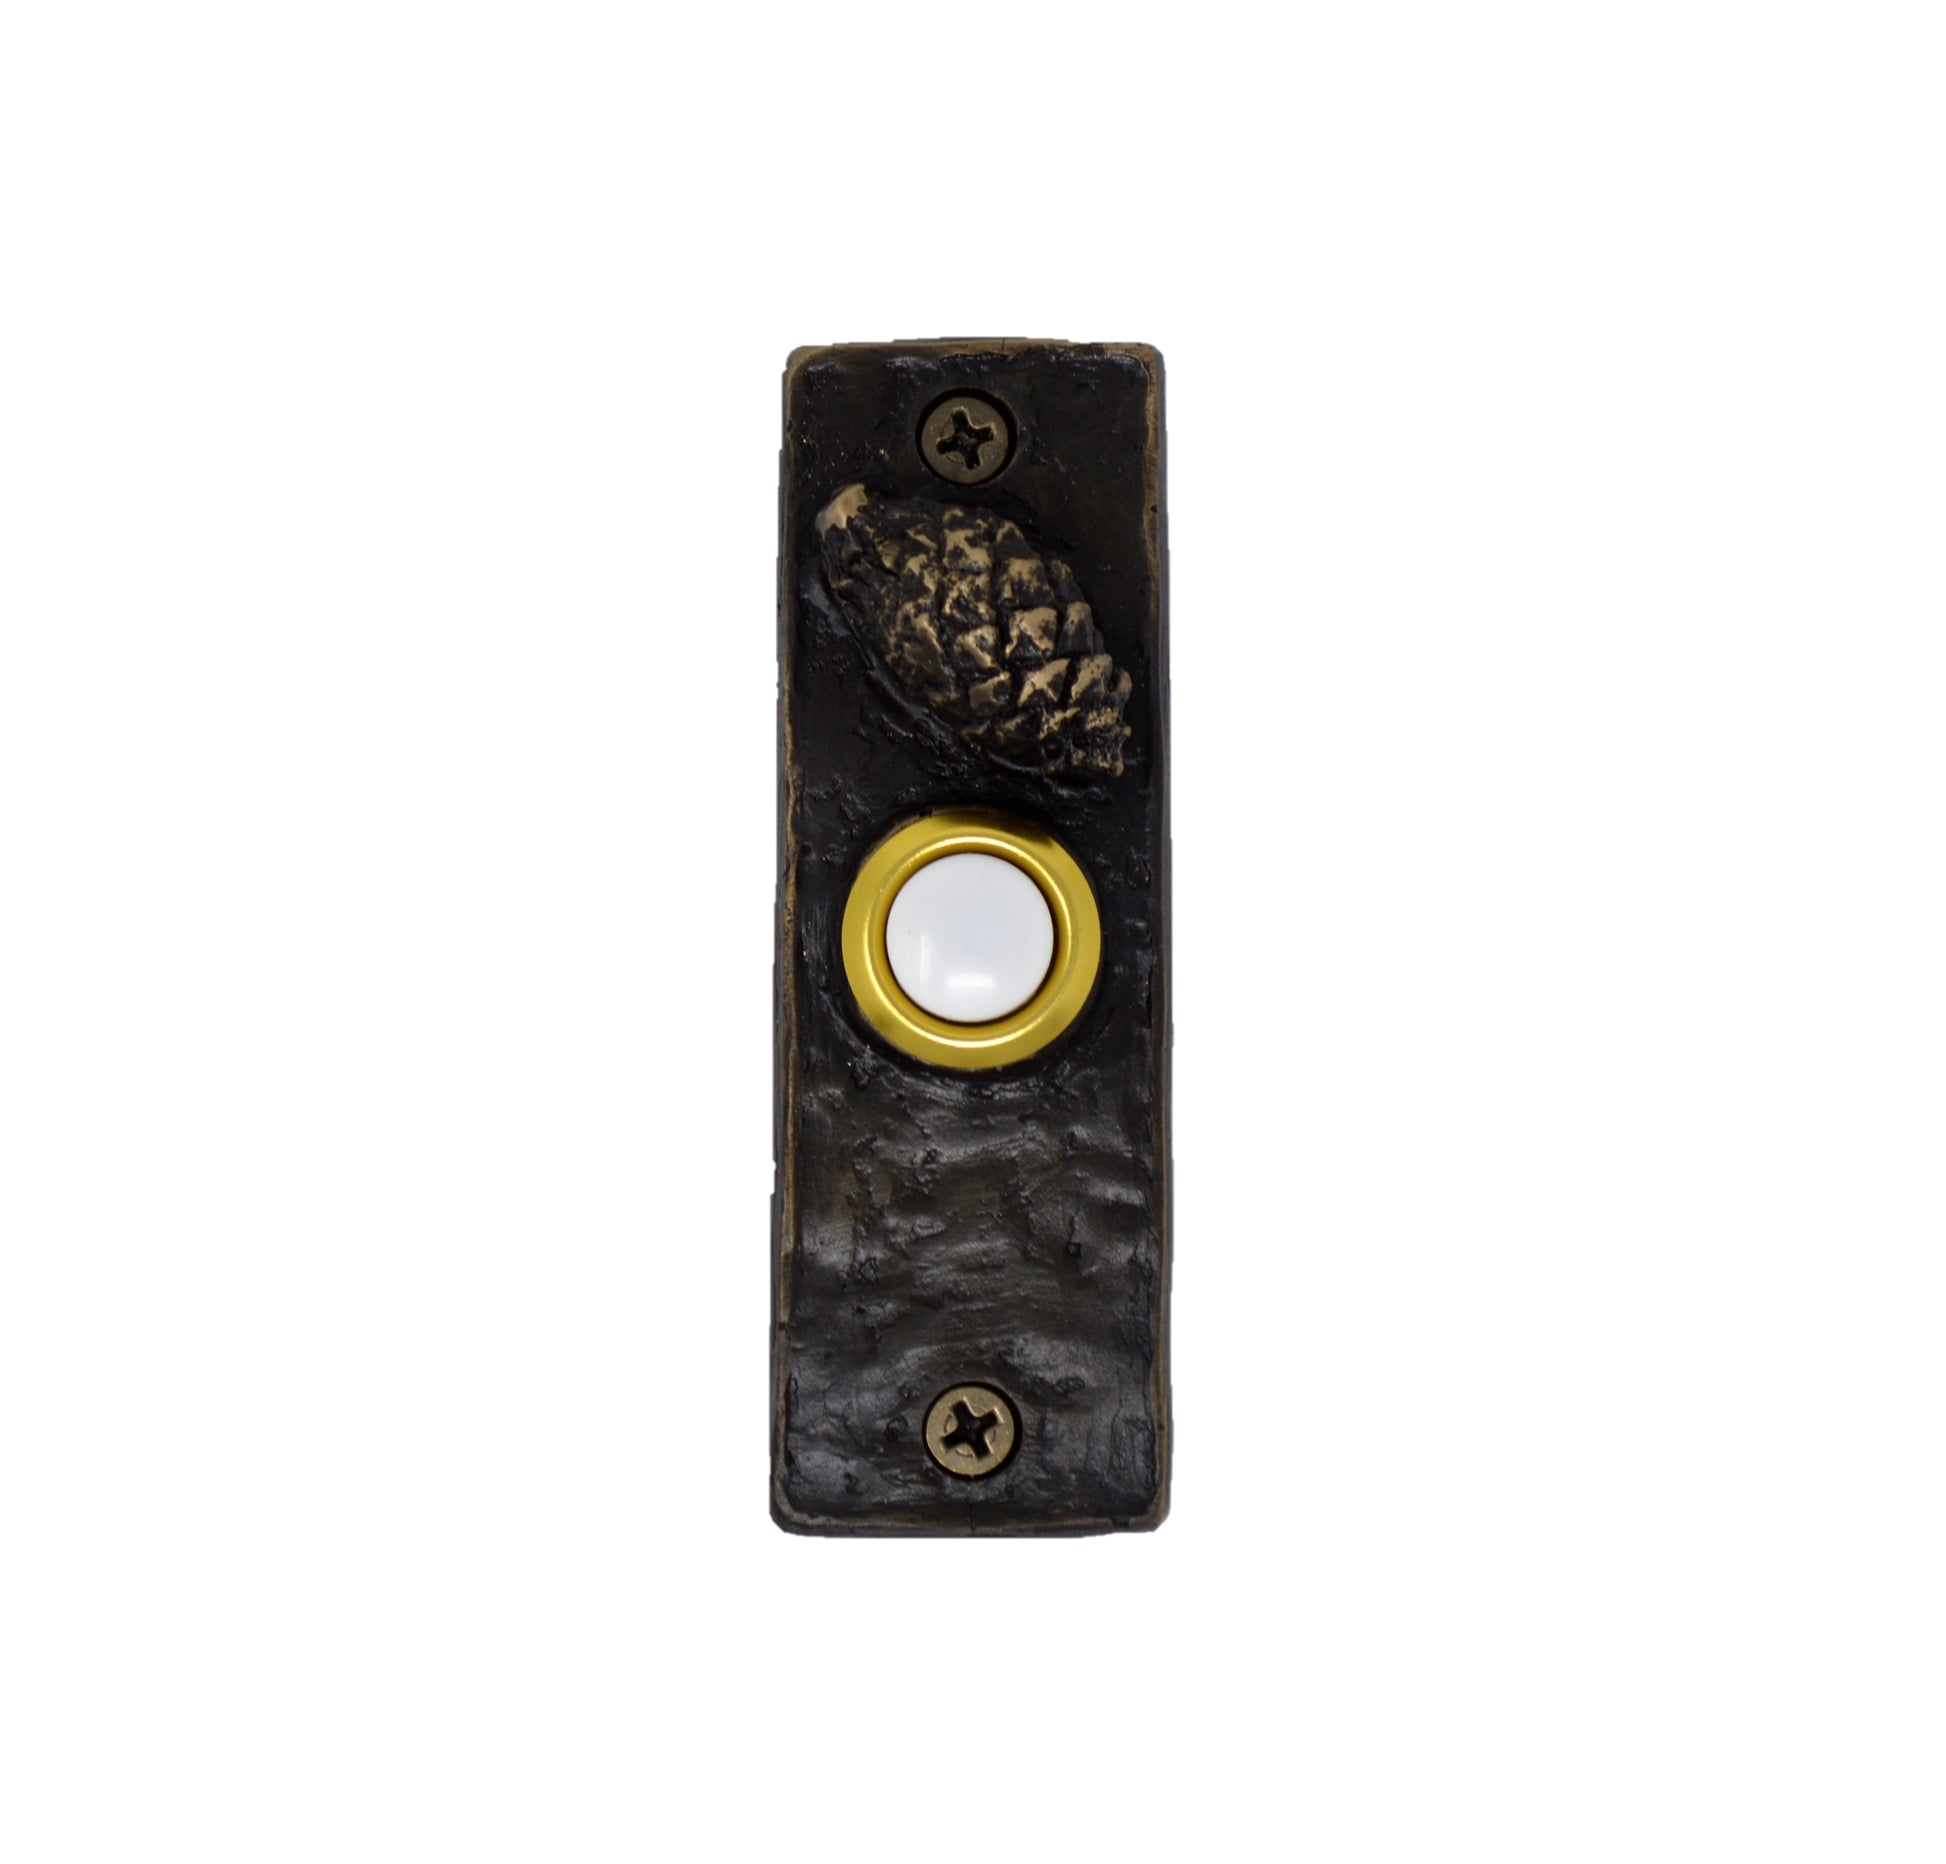 Slim bronze doorbell with Lodgepole pine cone